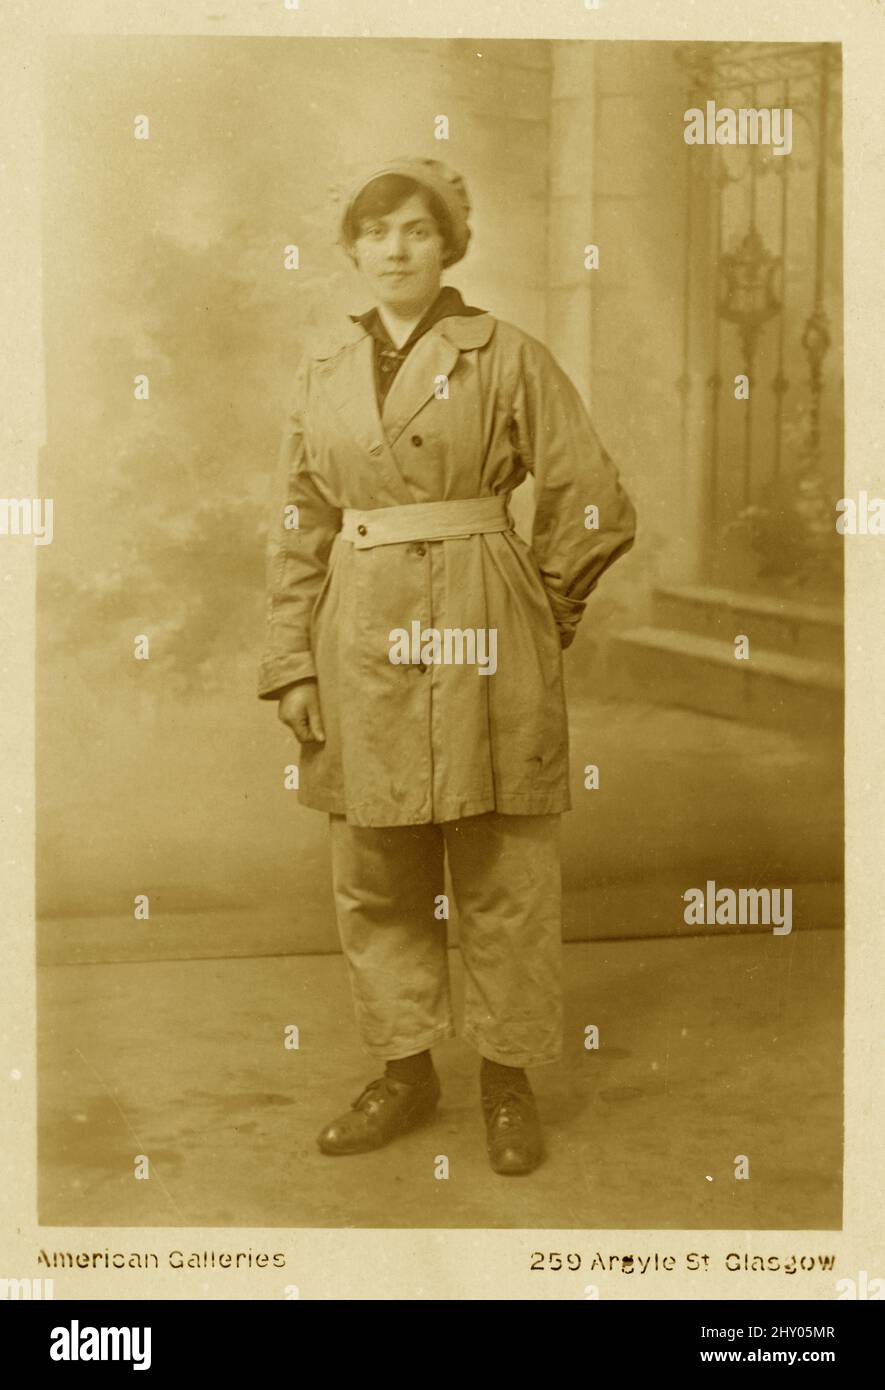 Postal original de la era WW1 de una trabajadora de fábrica, de municiones, pantalones y una gorra, estudio de American Galleries, 259 Argyle St. Glasgow, alrededor de 1916-1918. Foto de stock